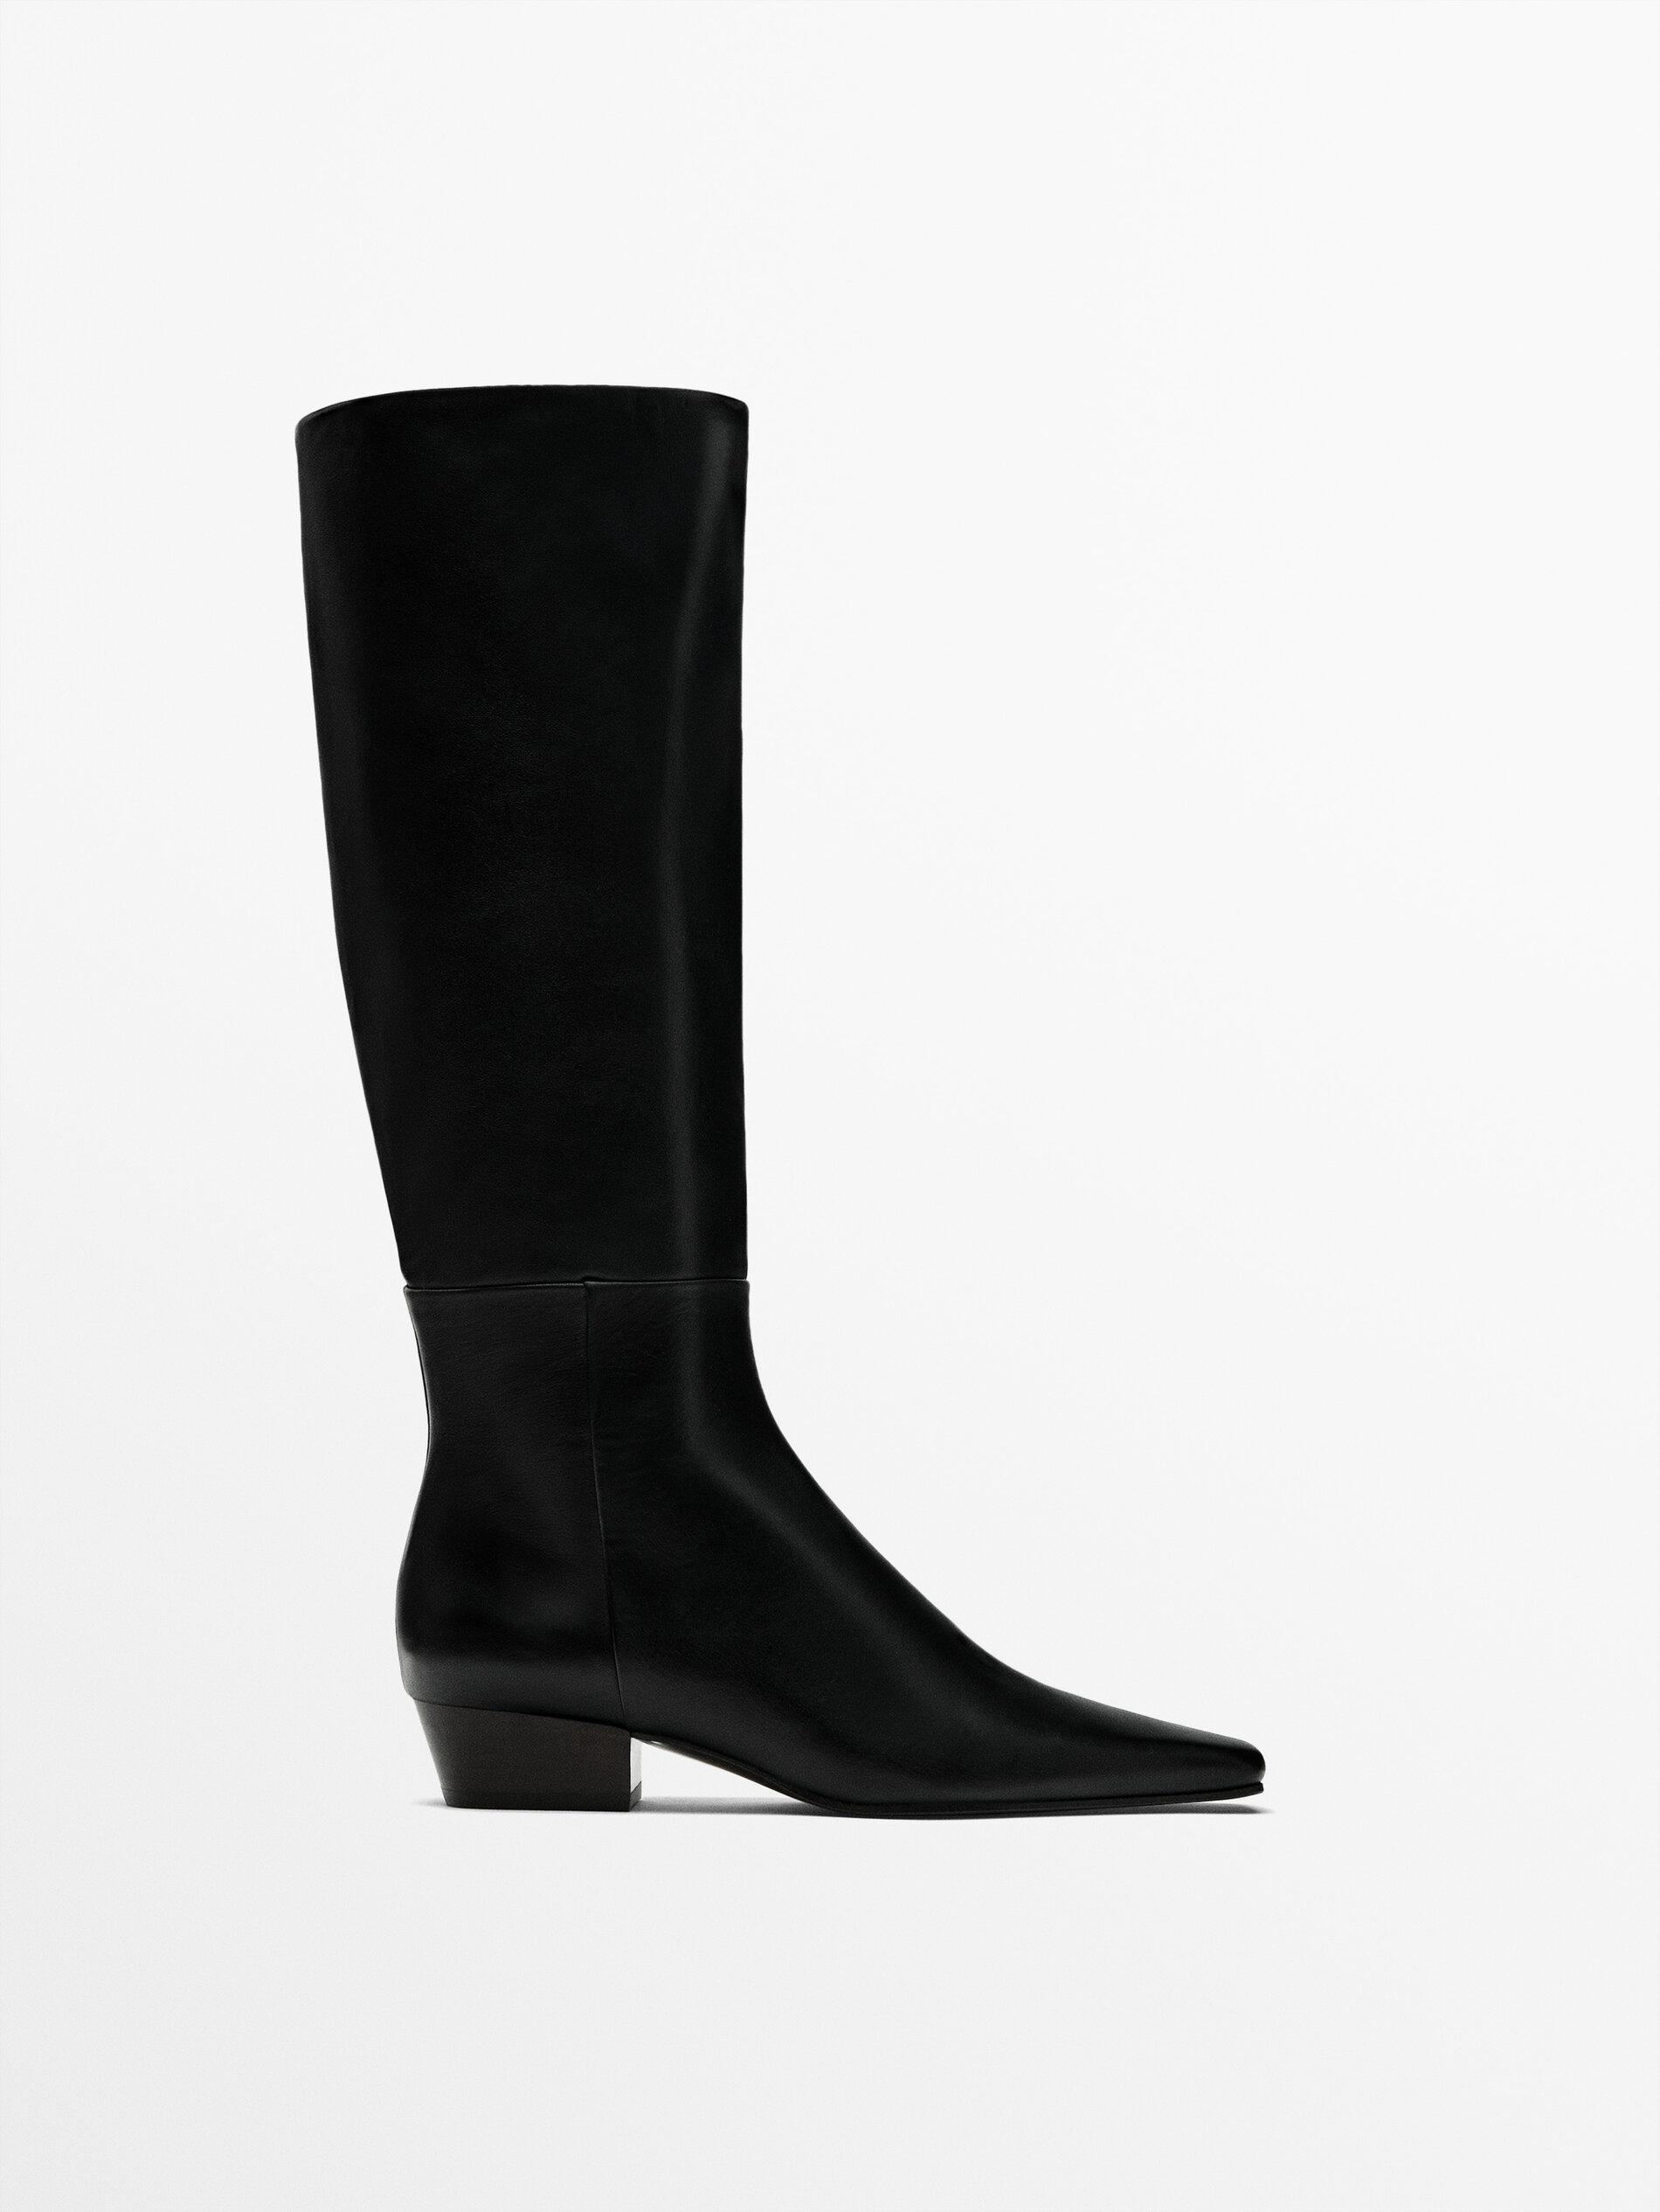 MASSIMO DUTTI Square Toe Boots in Black | Lyst